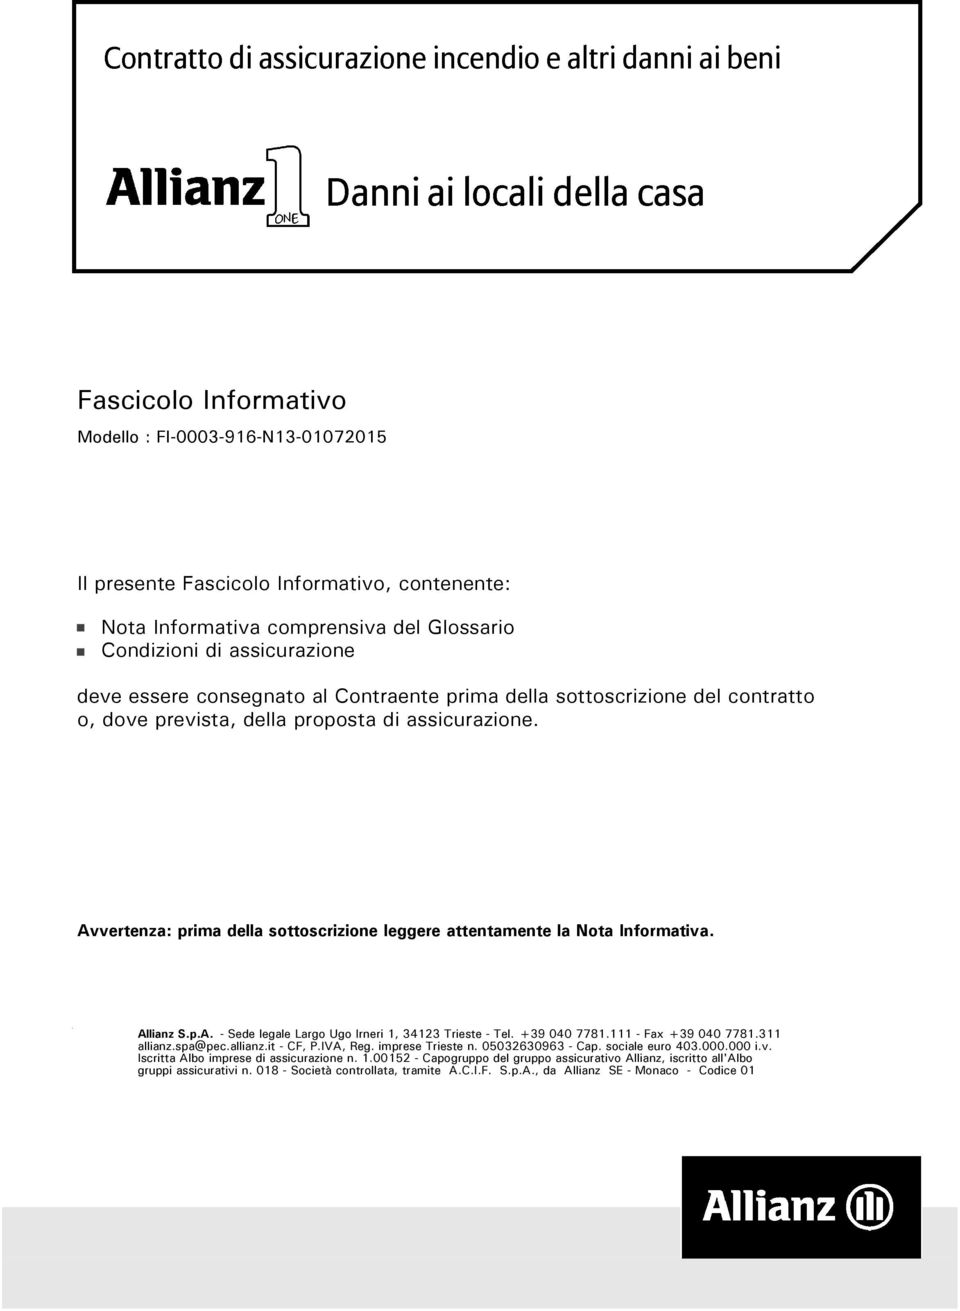 Avvertenza: prima della sottoscrizione leggere attentamente la Nota Informativa. Allianz S.p.A. - Sede legale Largo Ugo Irneri 1, 34123 Trieste - Tel. +39 040 7781.